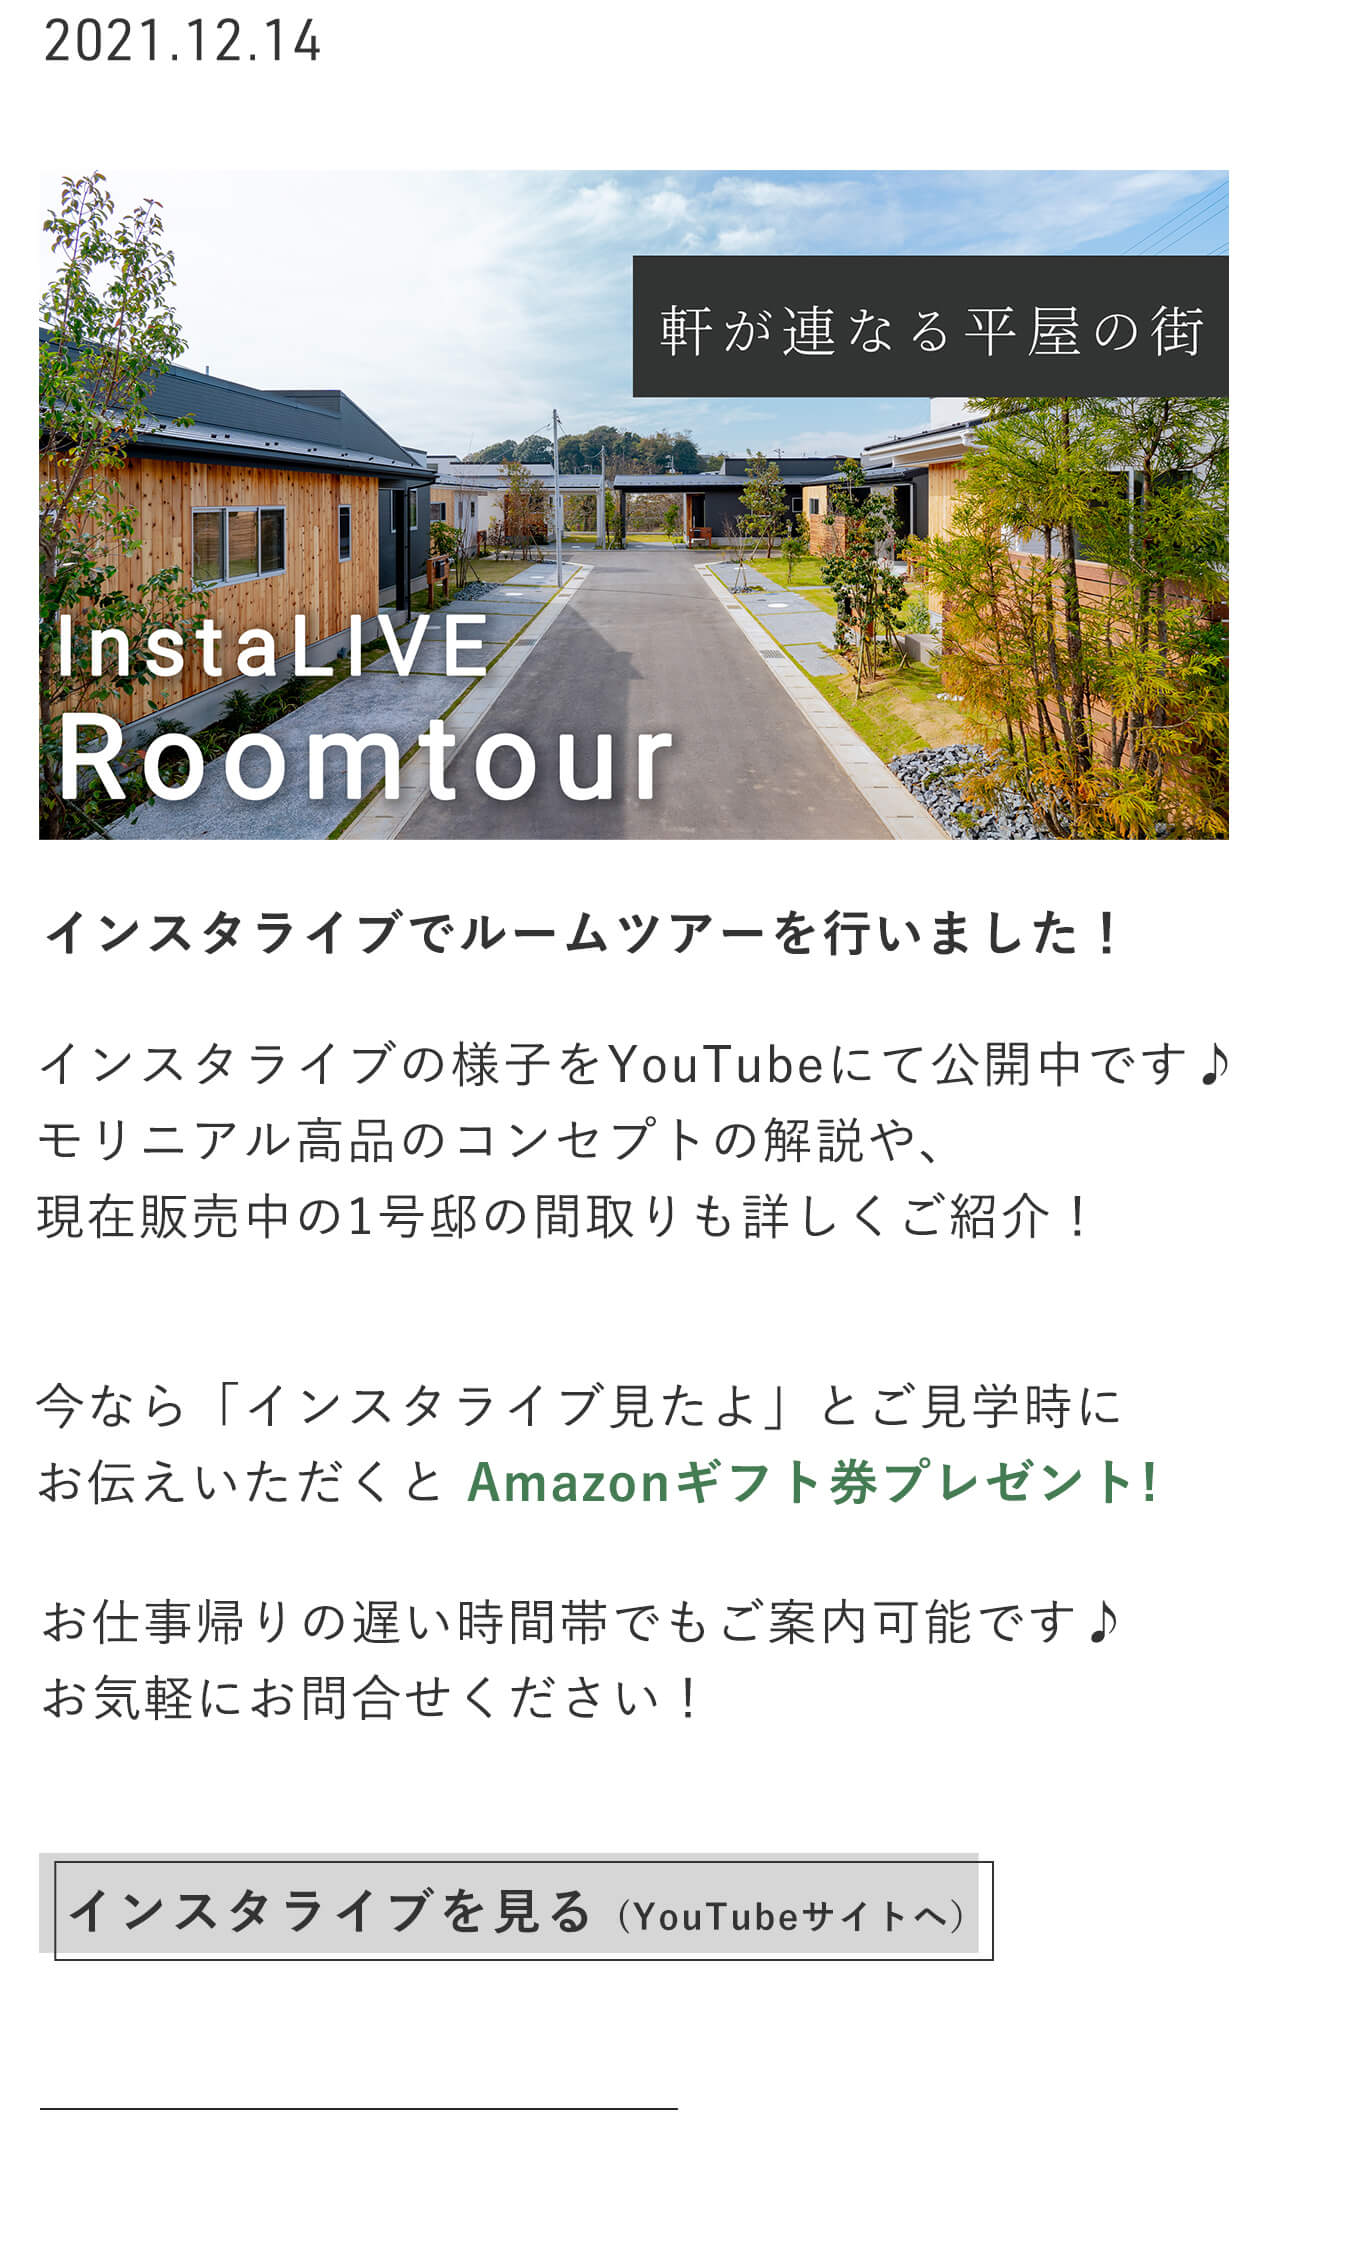 インスタライブの様子をYouTubeで見る／千葉市若葉区の平屋新築一戸建て